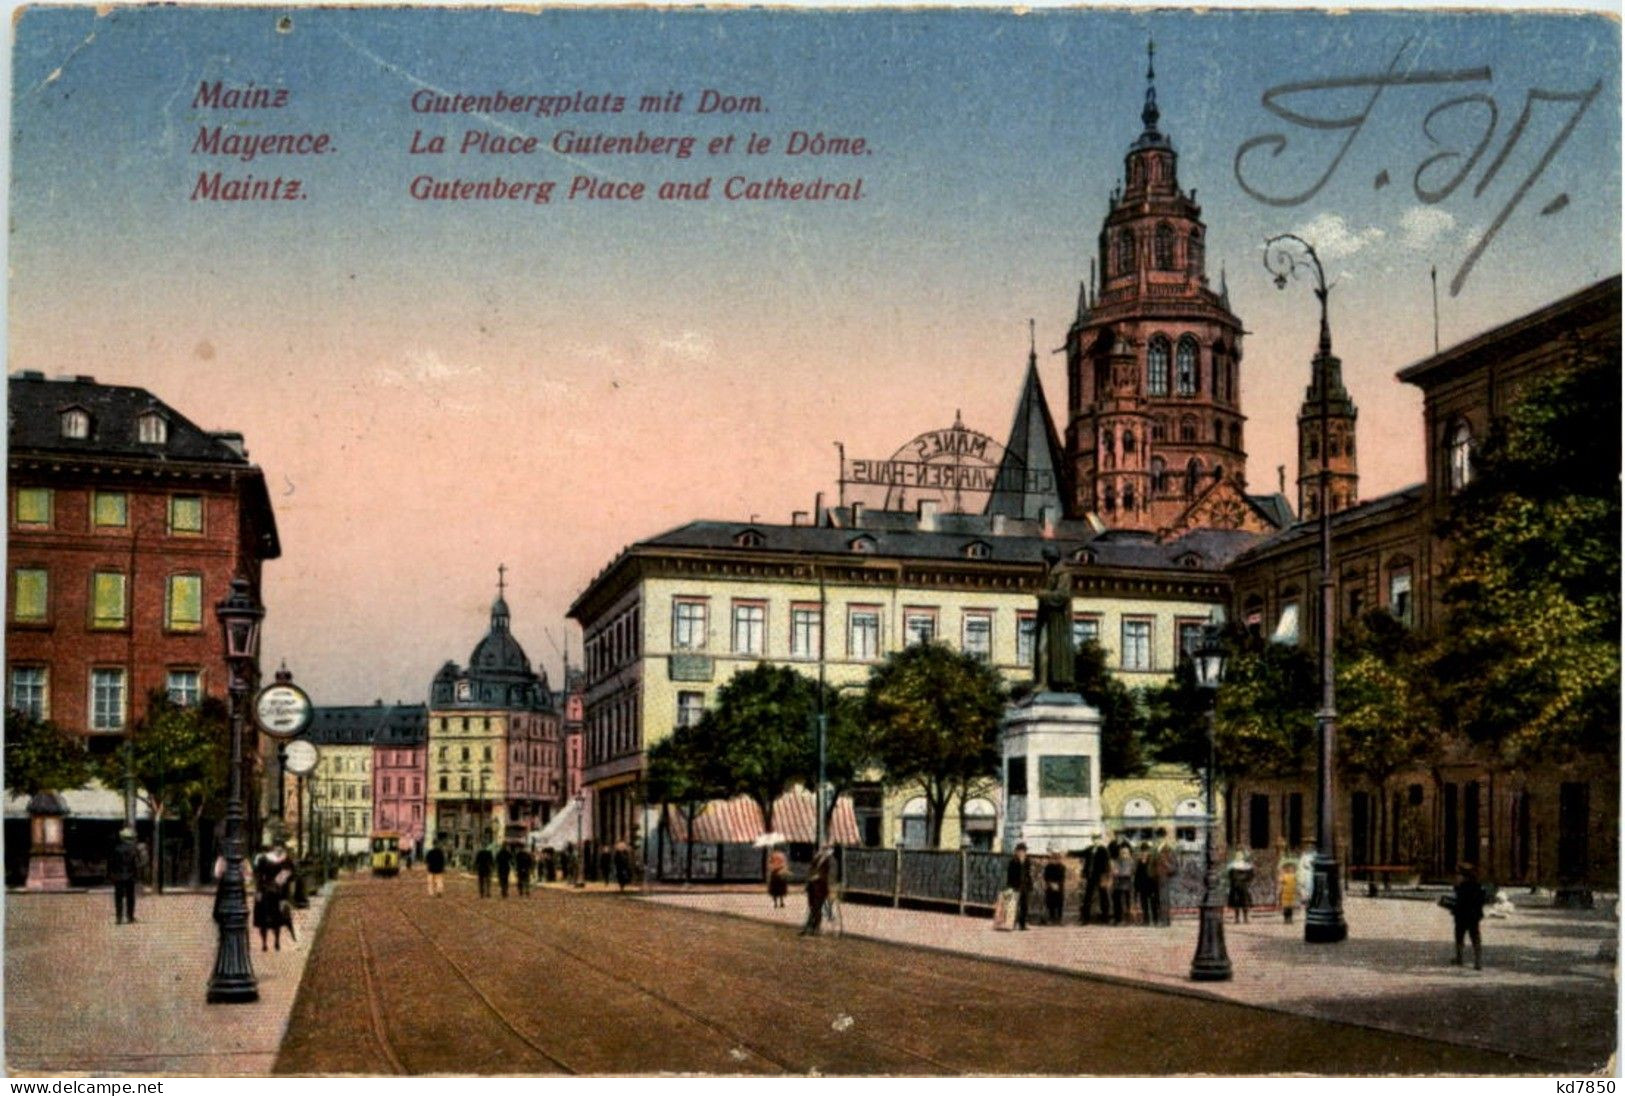 Mainz - Gutenbergplatz - Mainz